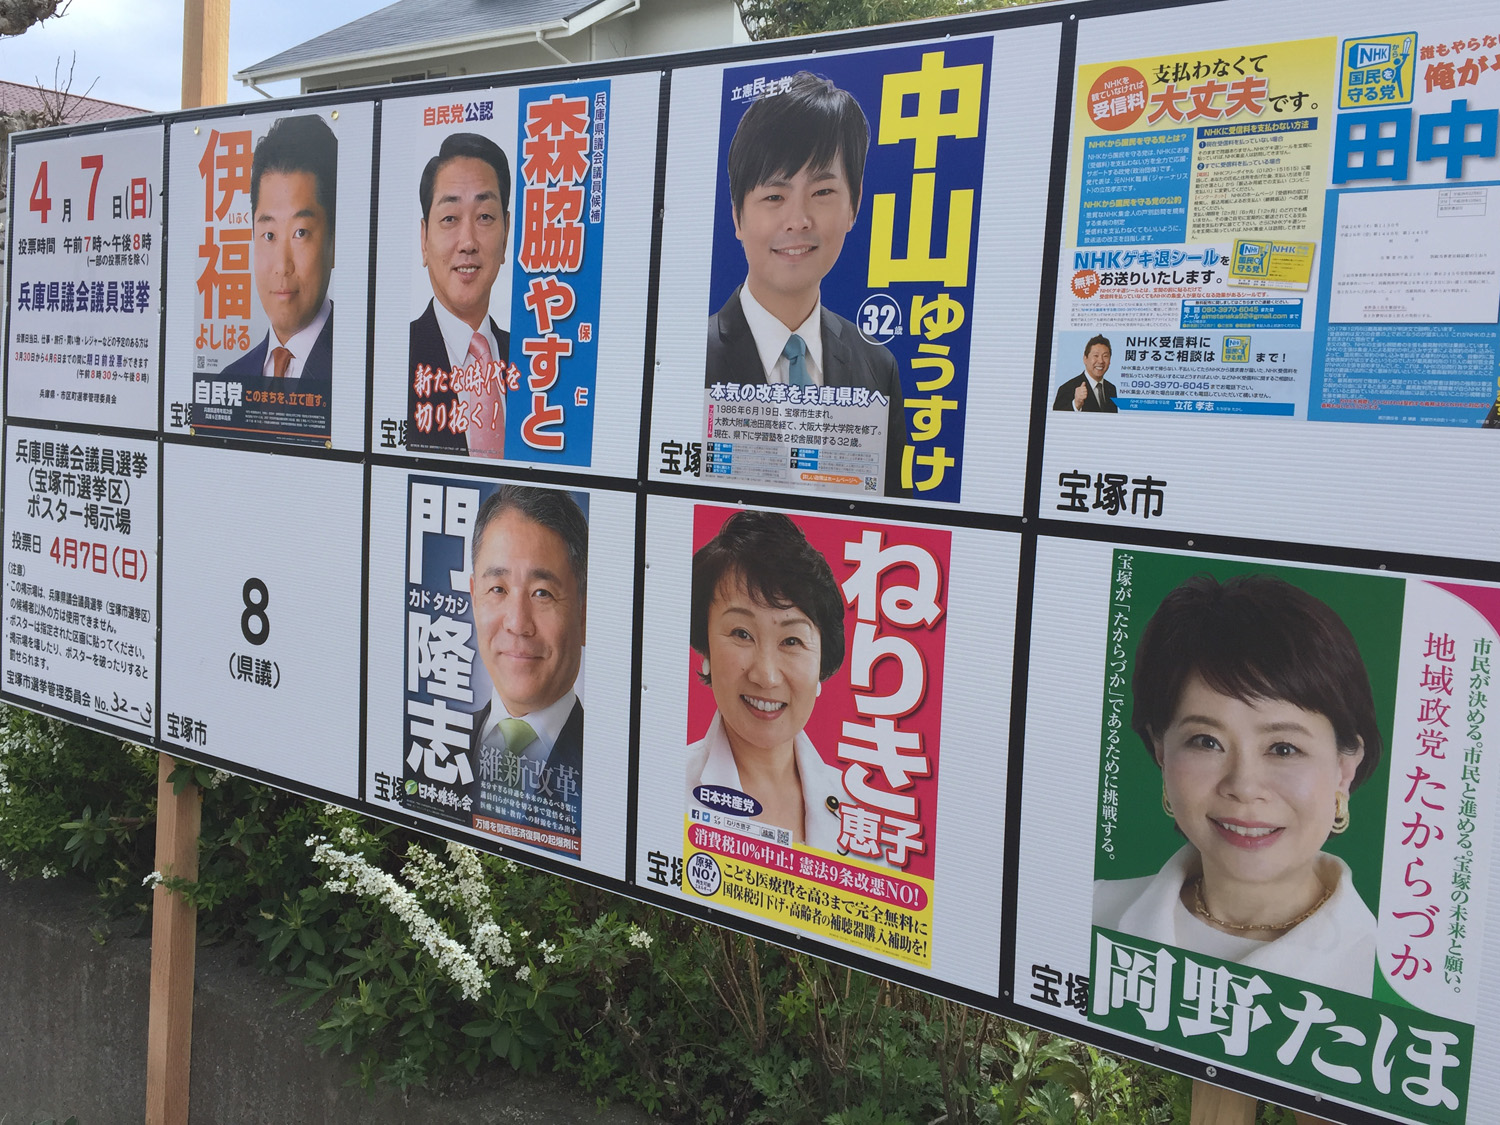 宝塚市県議選挙掲示板